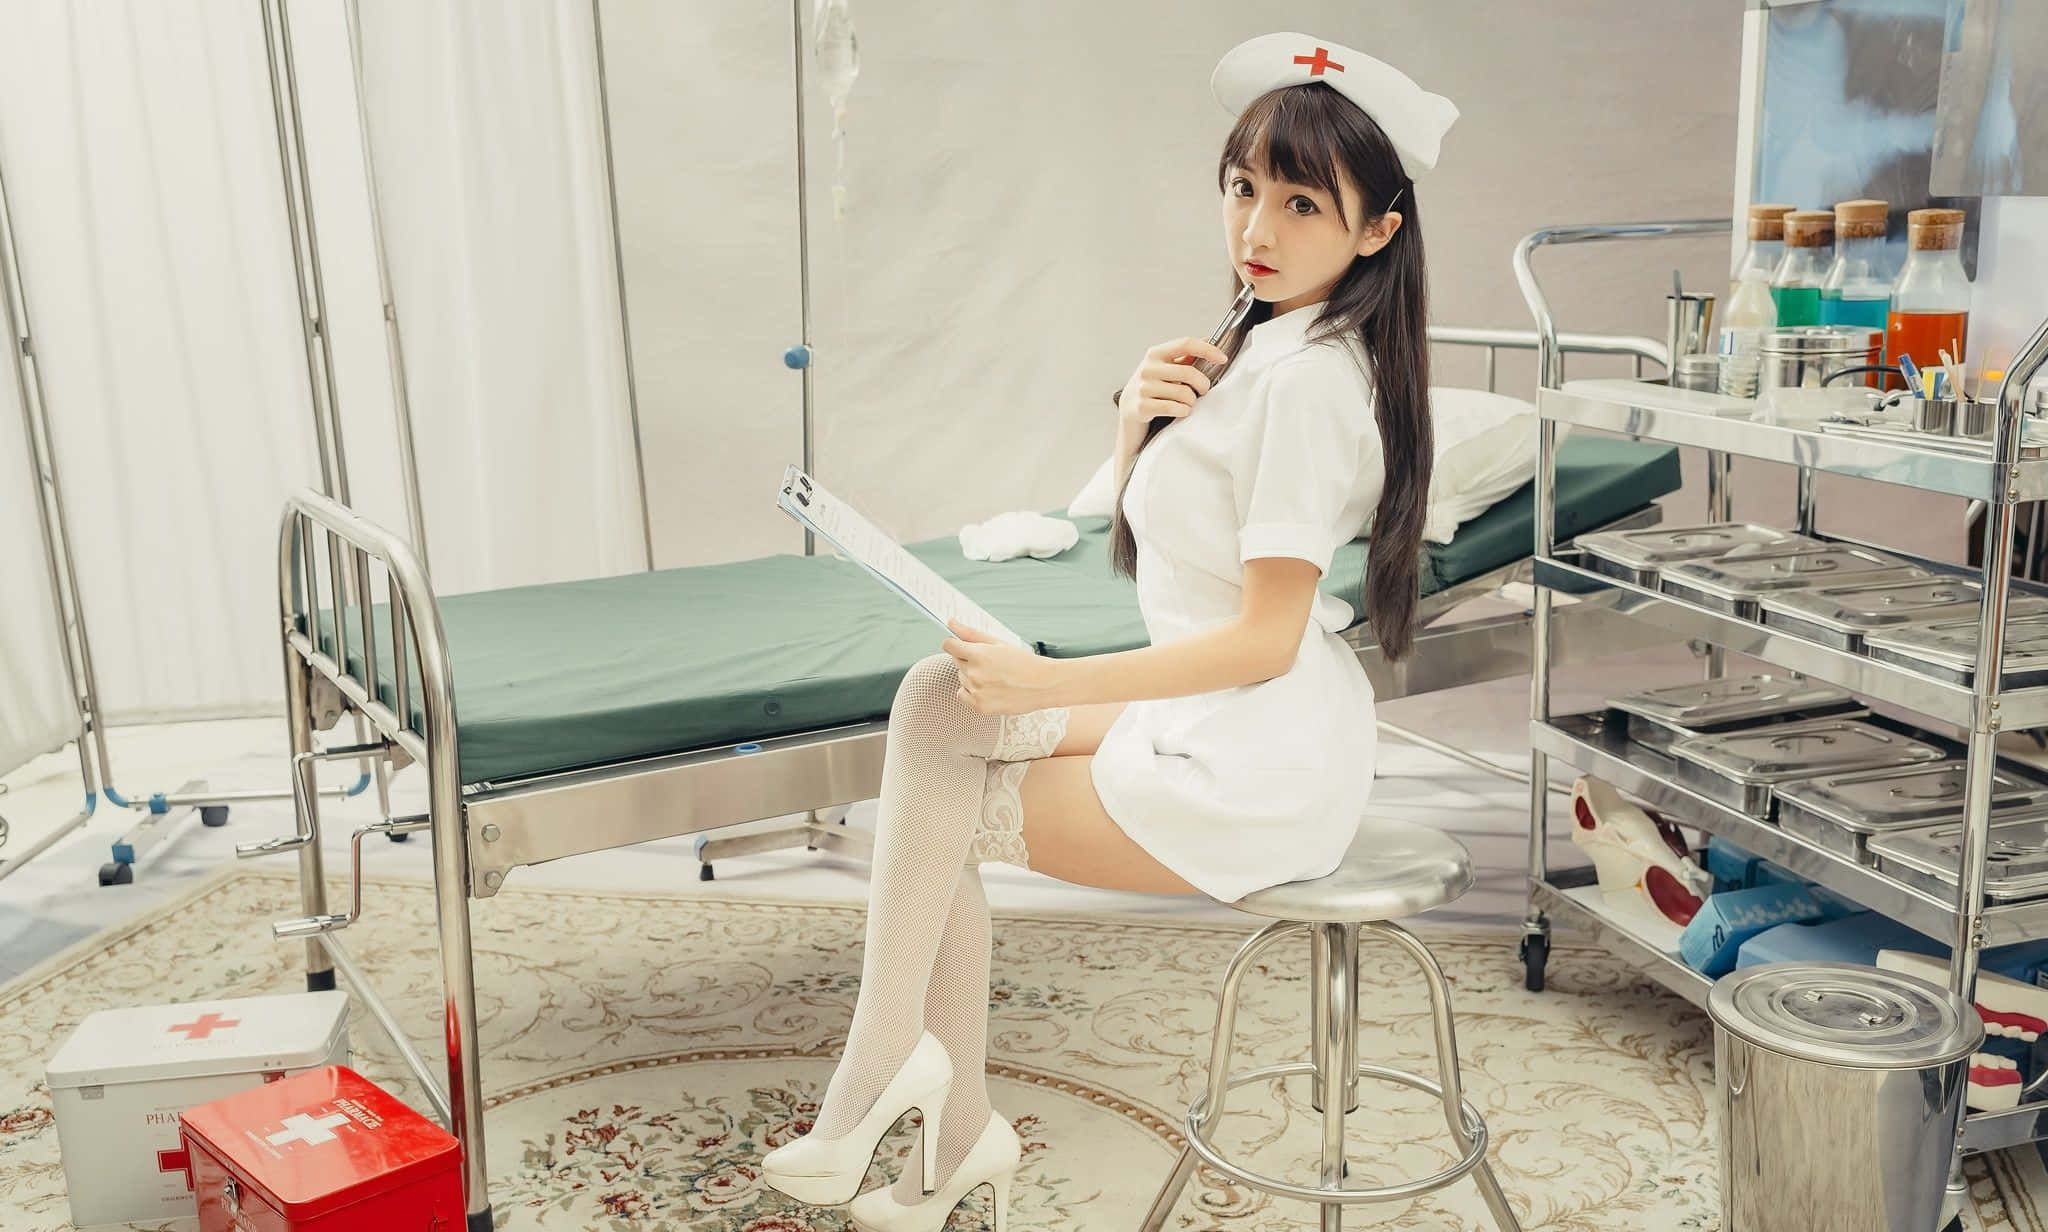 Einekrankenschwester Sitzt Auf Einem Hocker In Einem Krankenzimmer.